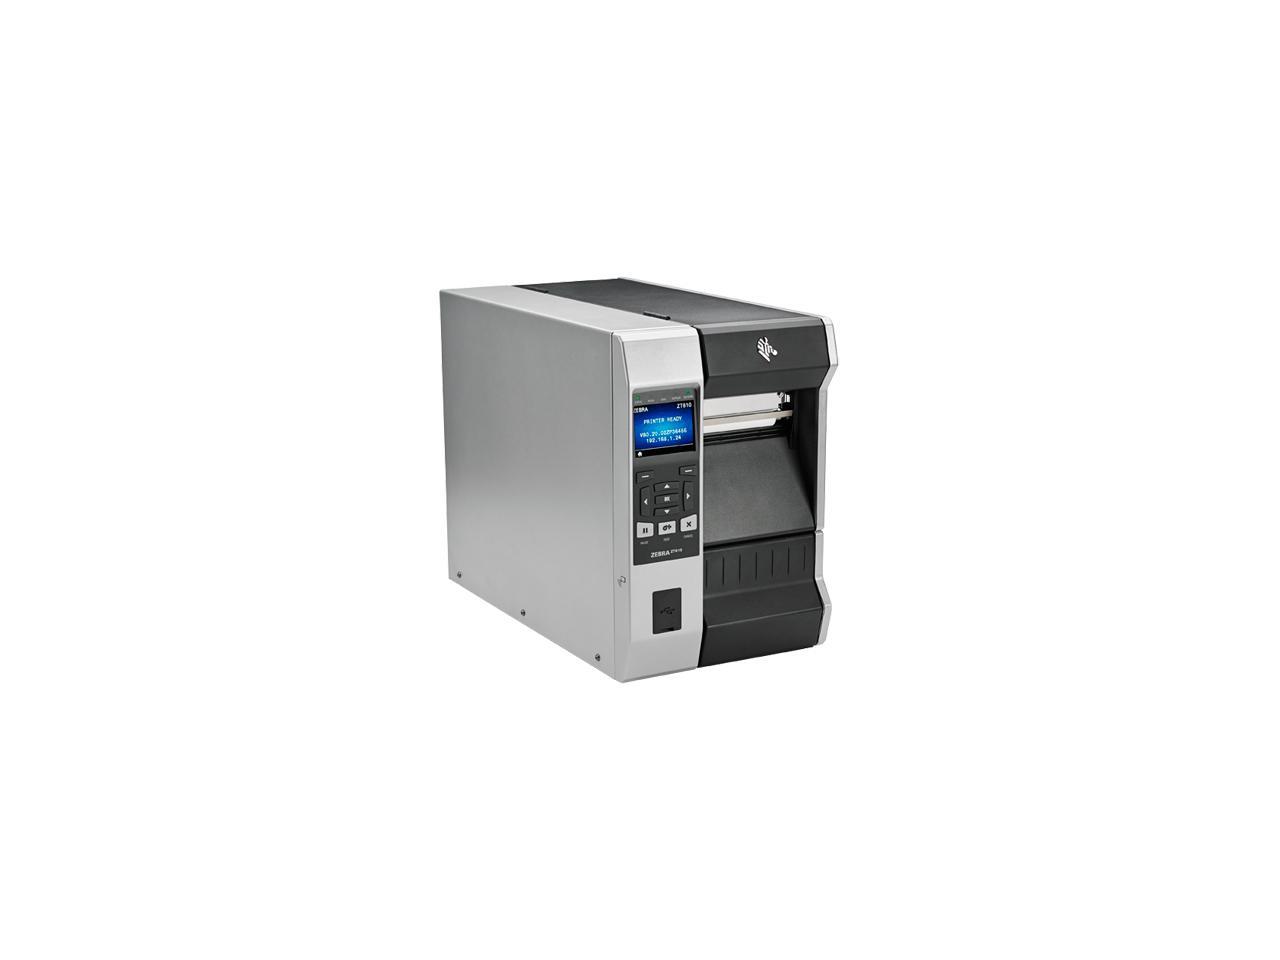 Zebra Zt610 4 Thermal Transfer Label Printer With Color Screen 300dpi Serial Usb Gigabit 8980